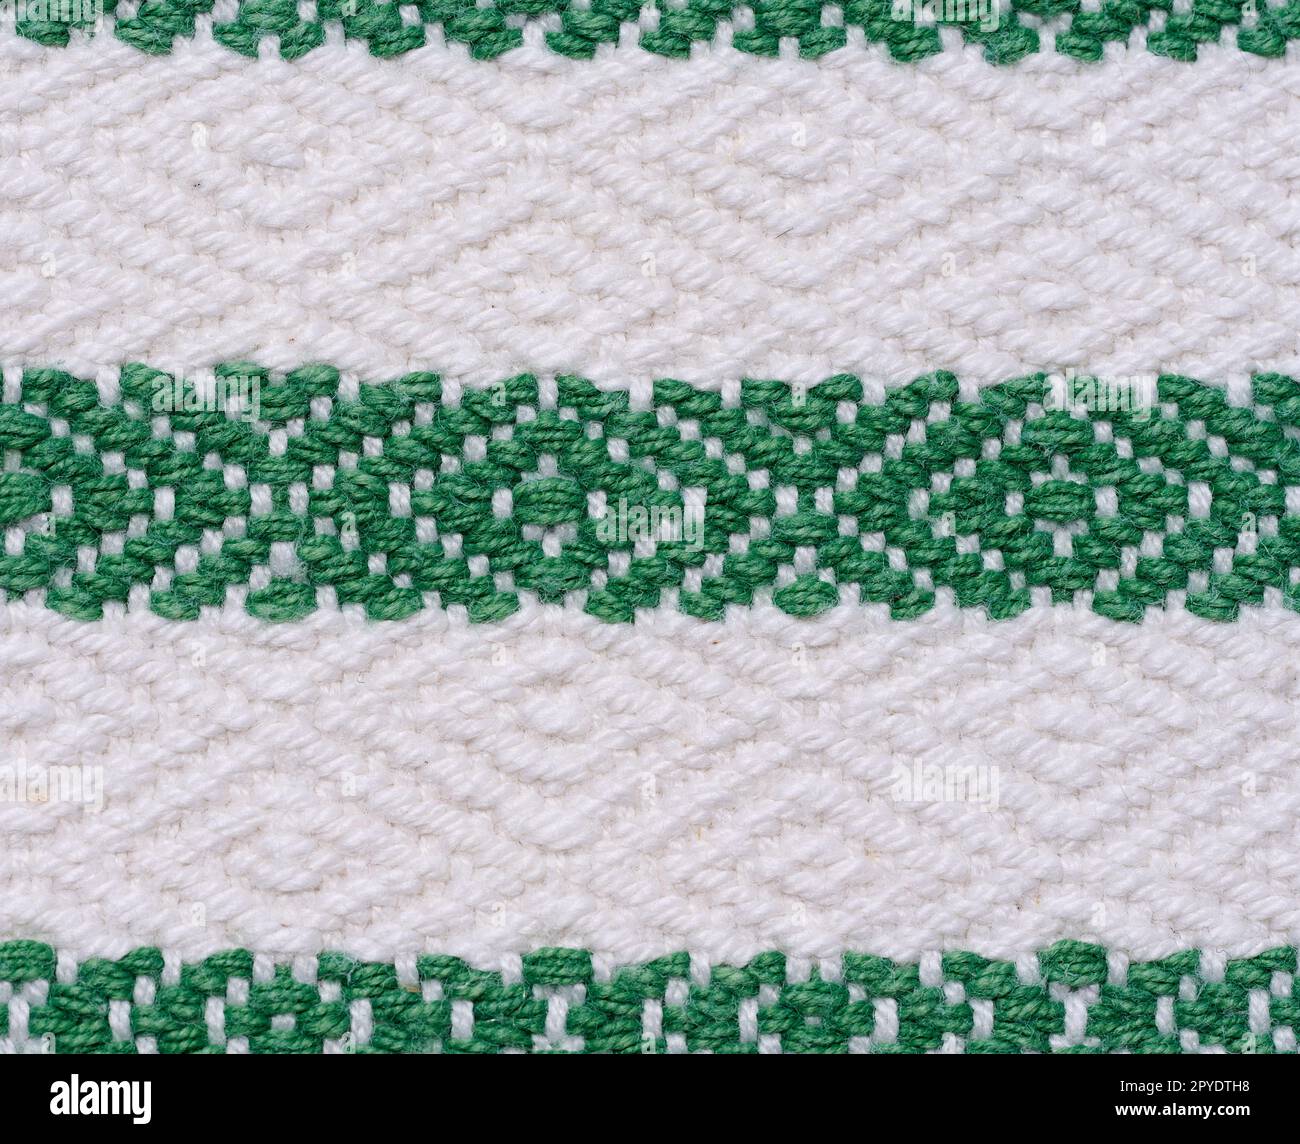 Ein Stück Baumwollstoff zur Herstellung von Tischdecken und Küchenhandtüchern mit grünen Stickerelementen Stockfoto